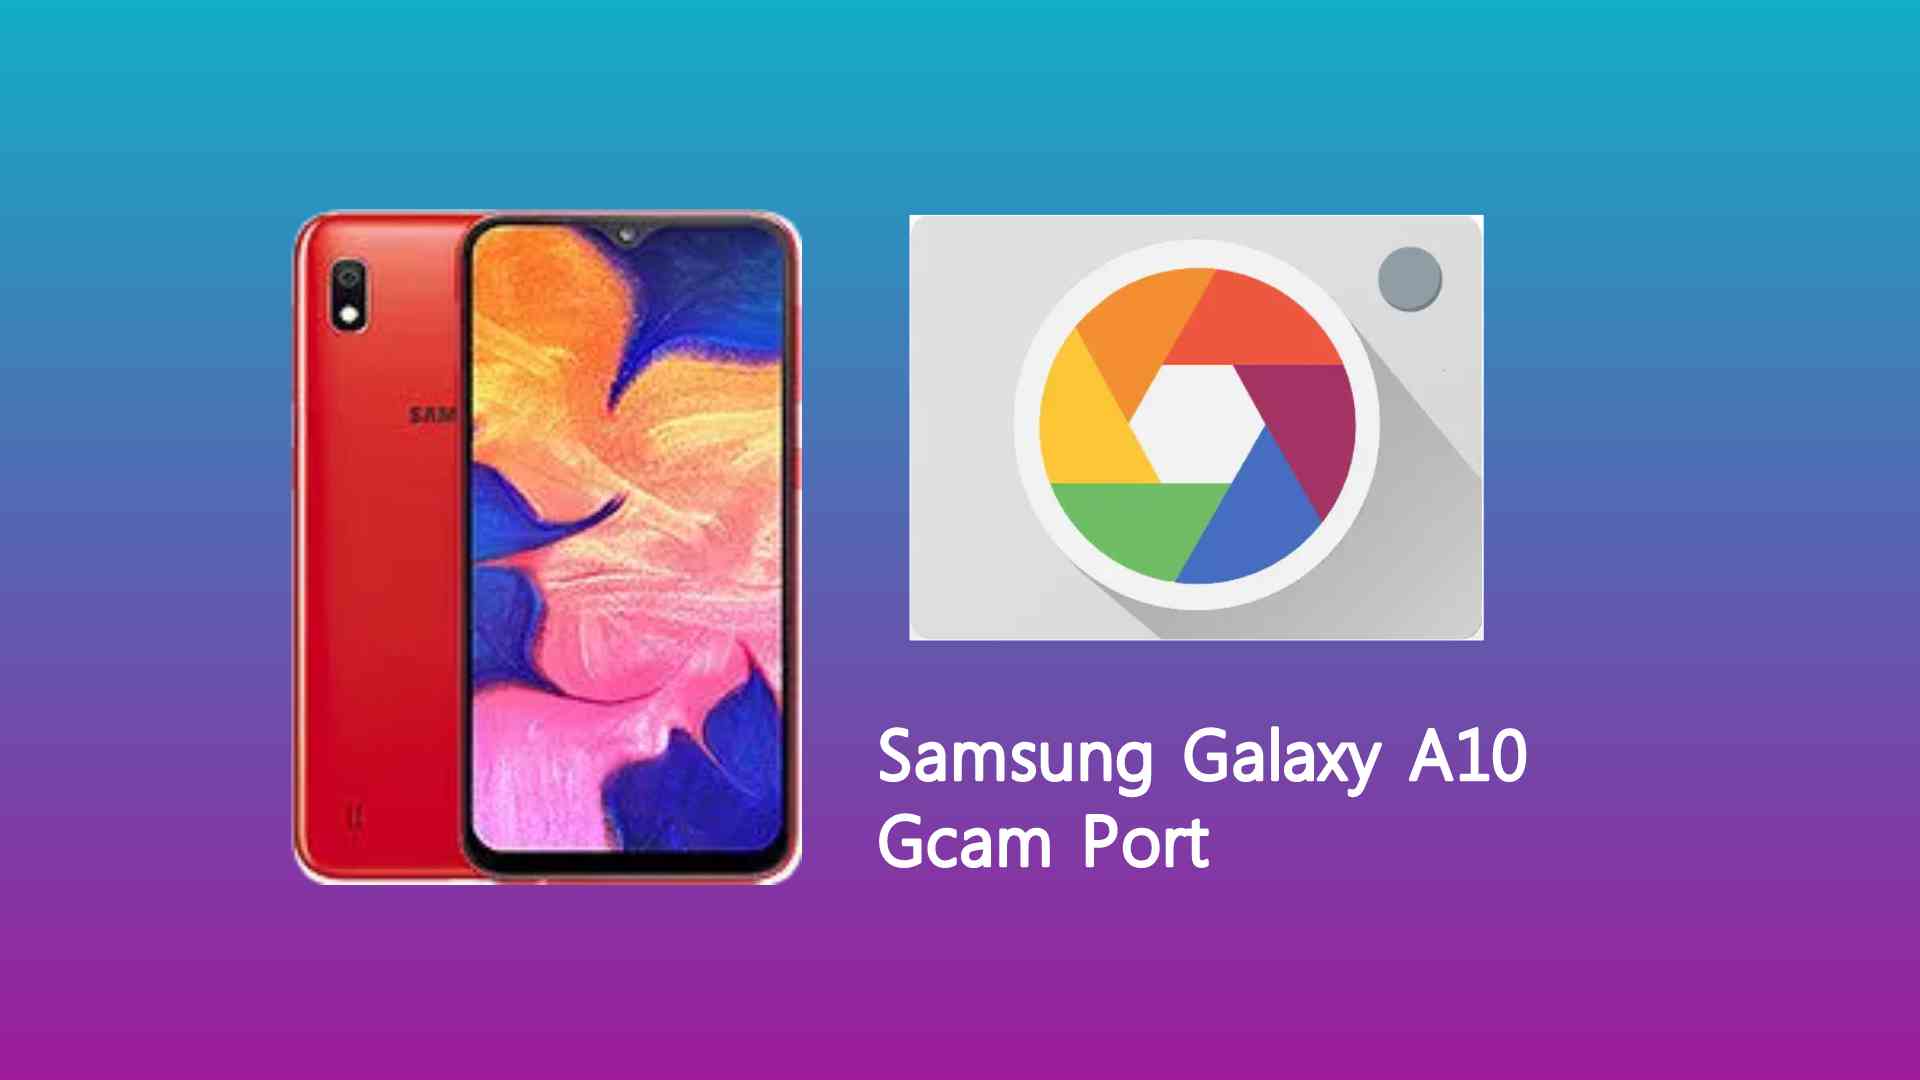 Samsung Galaxy A10 Gcam Port